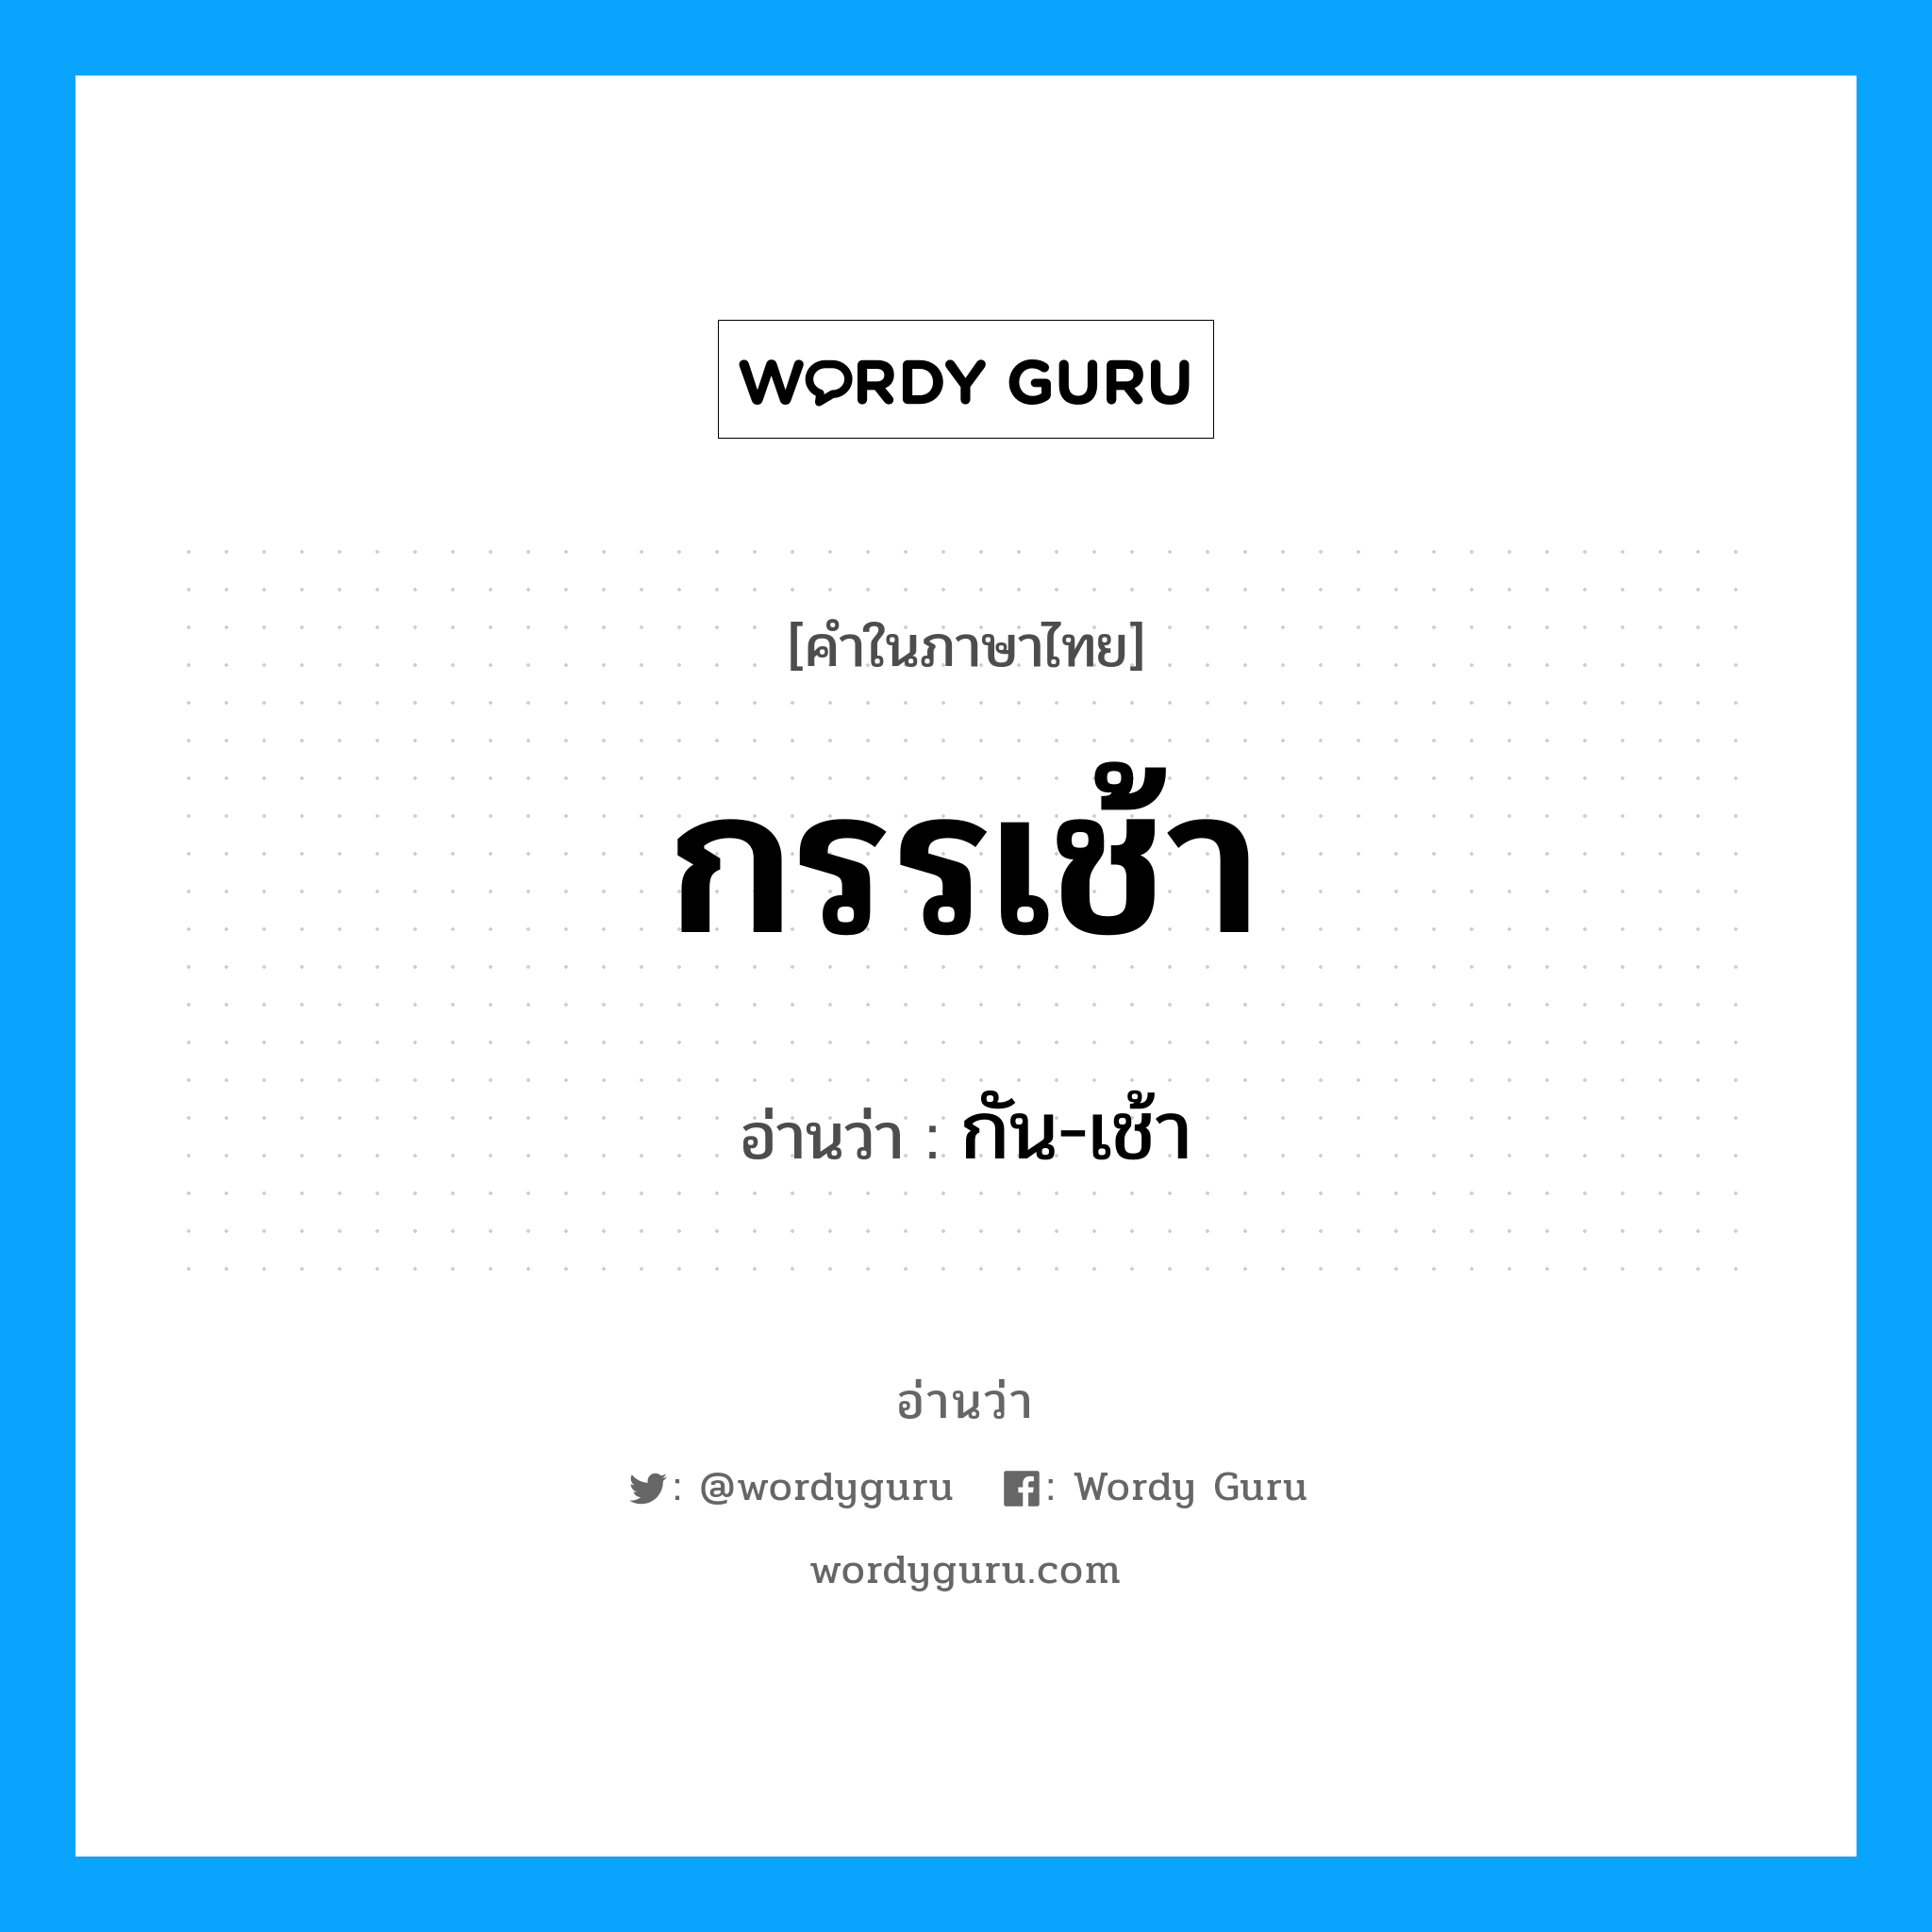 กัน-เช้า เป็นคำอ่านของคำไหน?, คำในภาษาไทย กัน-เช้า อ่านว่า กรรเช้า